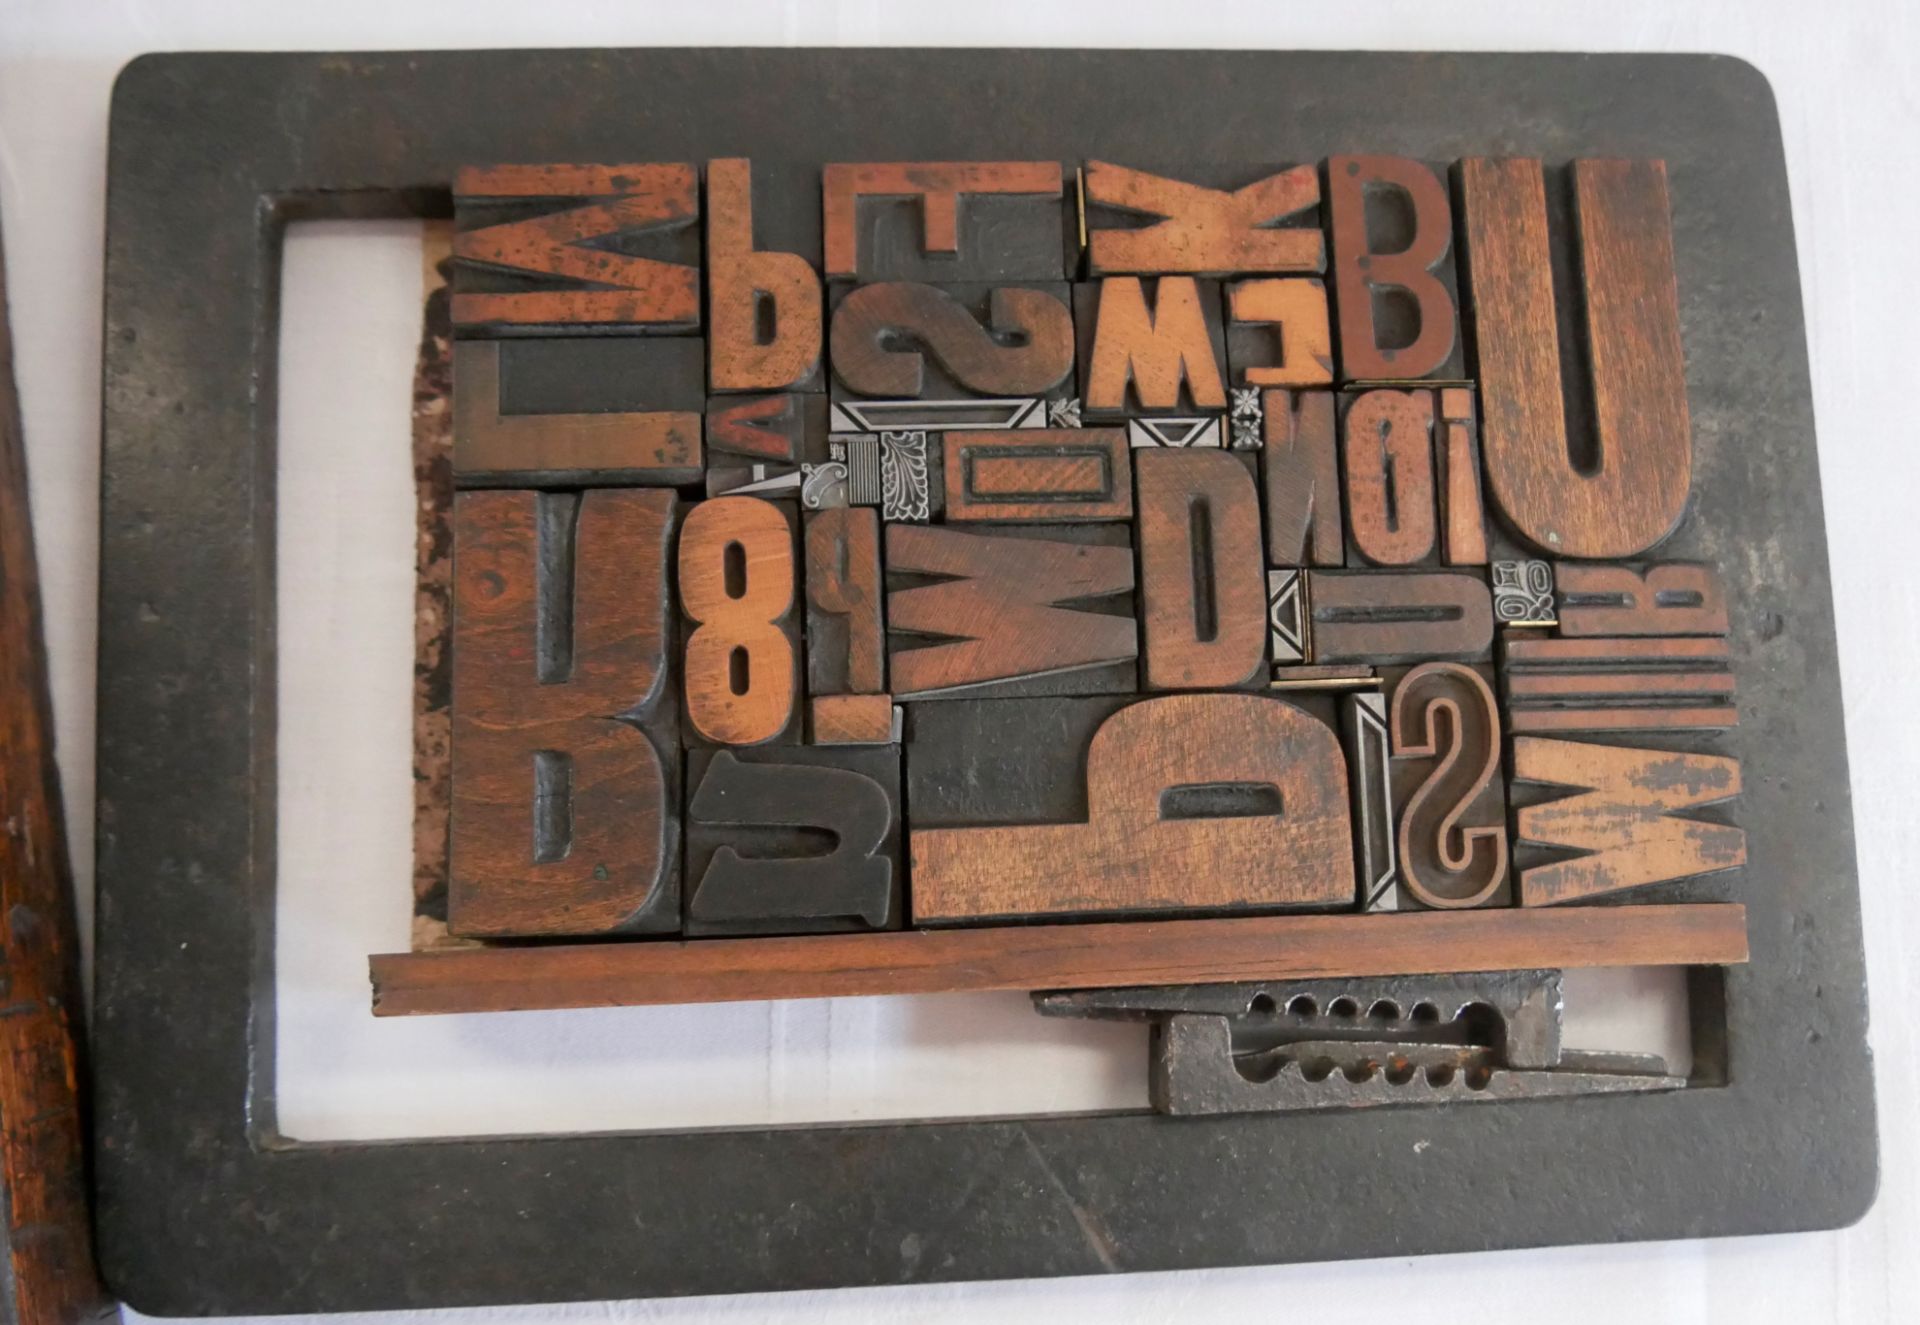 Druckplatte mit einzelnen Buchstaben, sowie 1 Schublade als Setzkasten. - Image 3 of 3